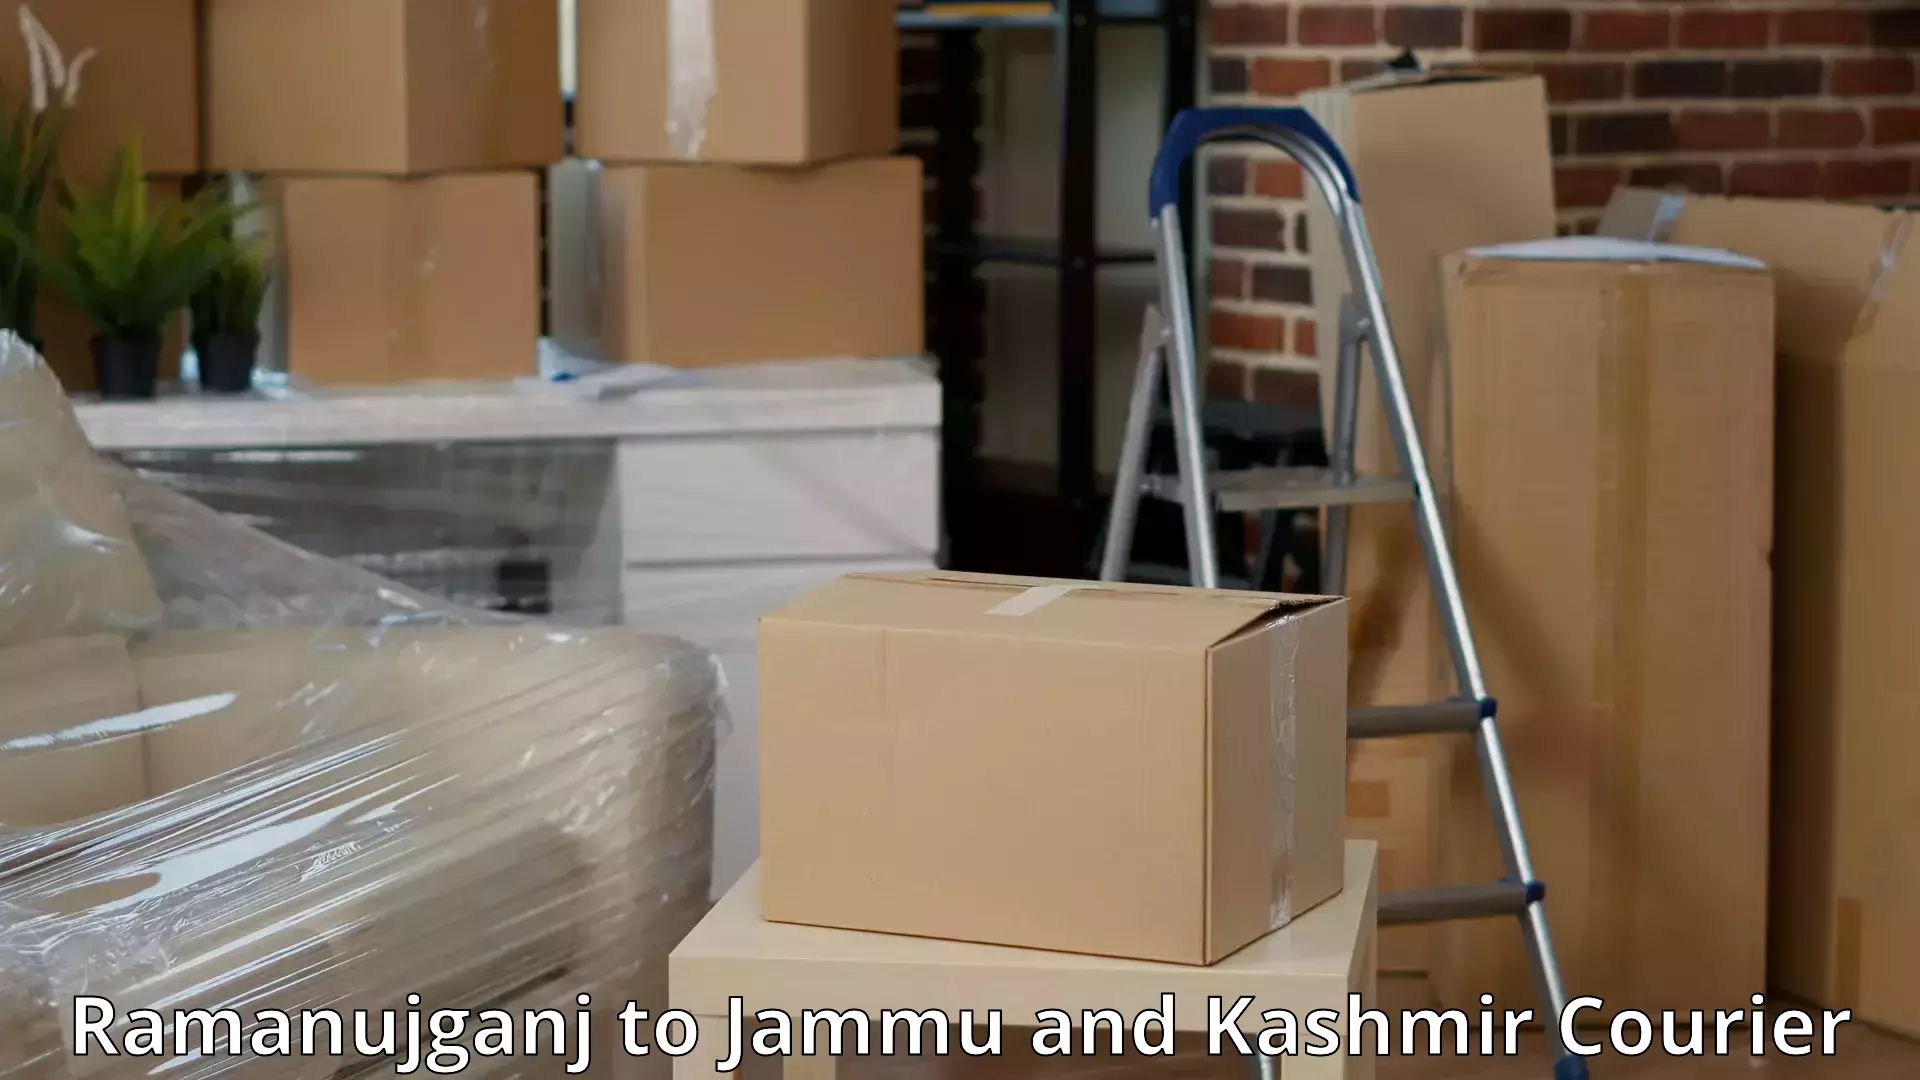 Comprehensive relocation services Ramanujganj to Srinagar Kashmir